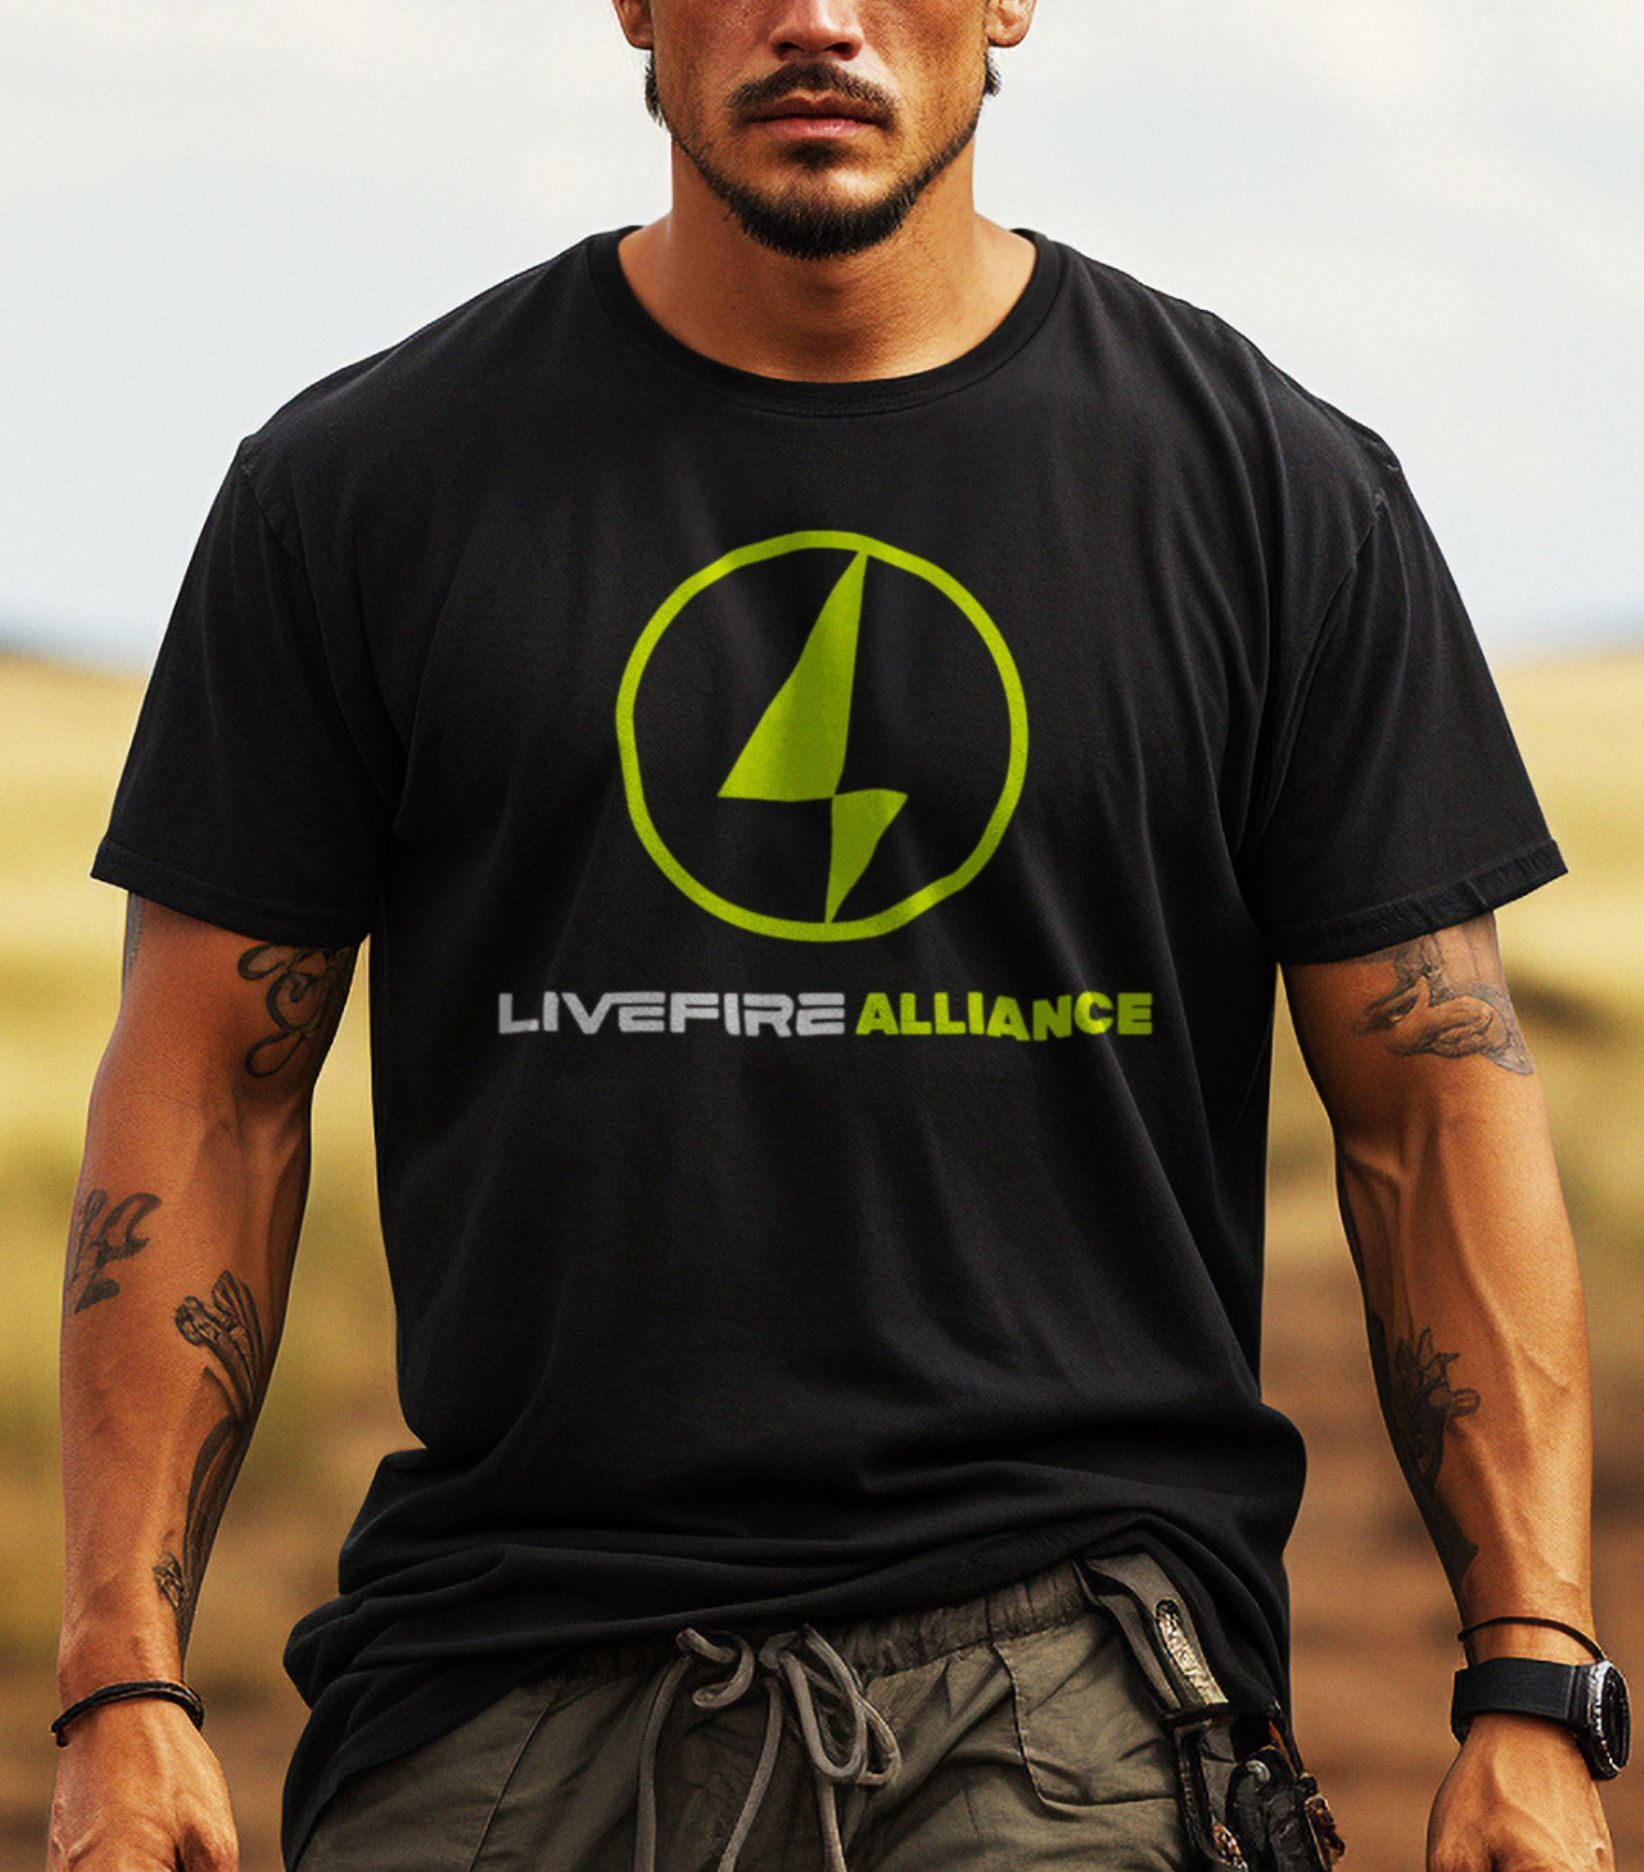 Free Alliance Shirt Promotion